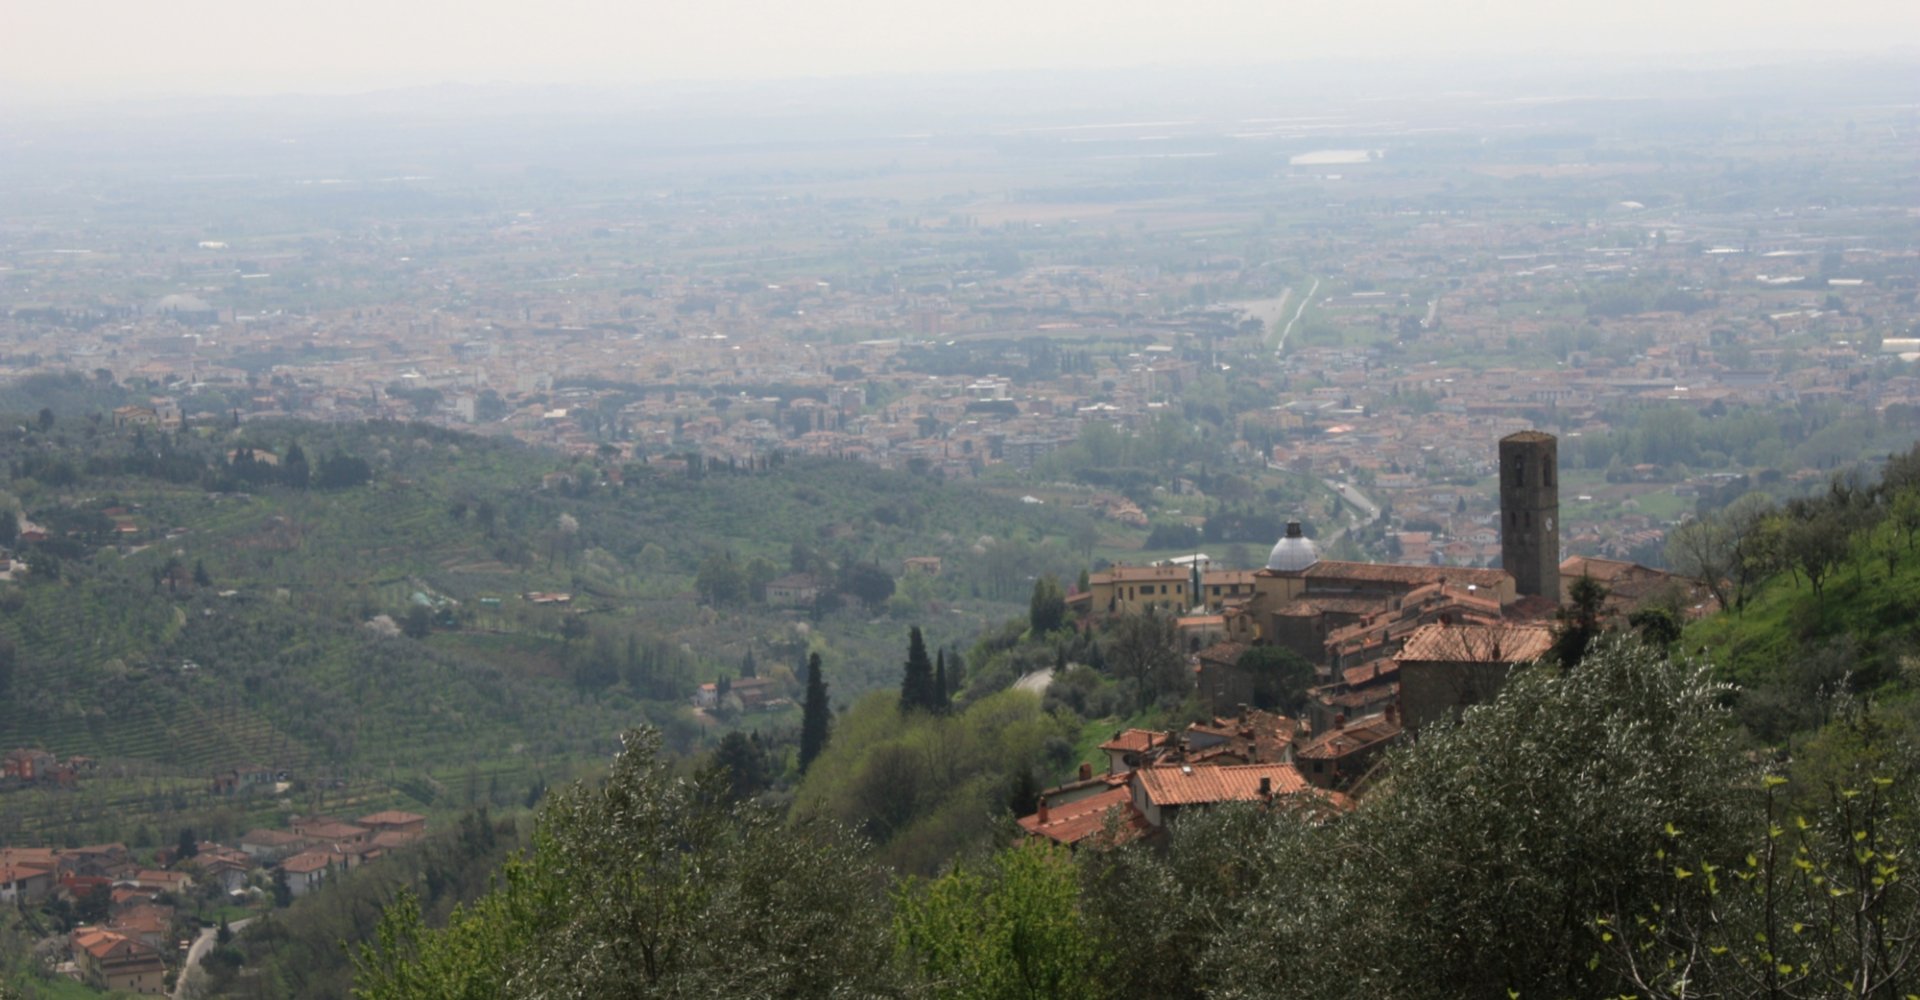 Panorama de Massa e Cozzile en Toscana